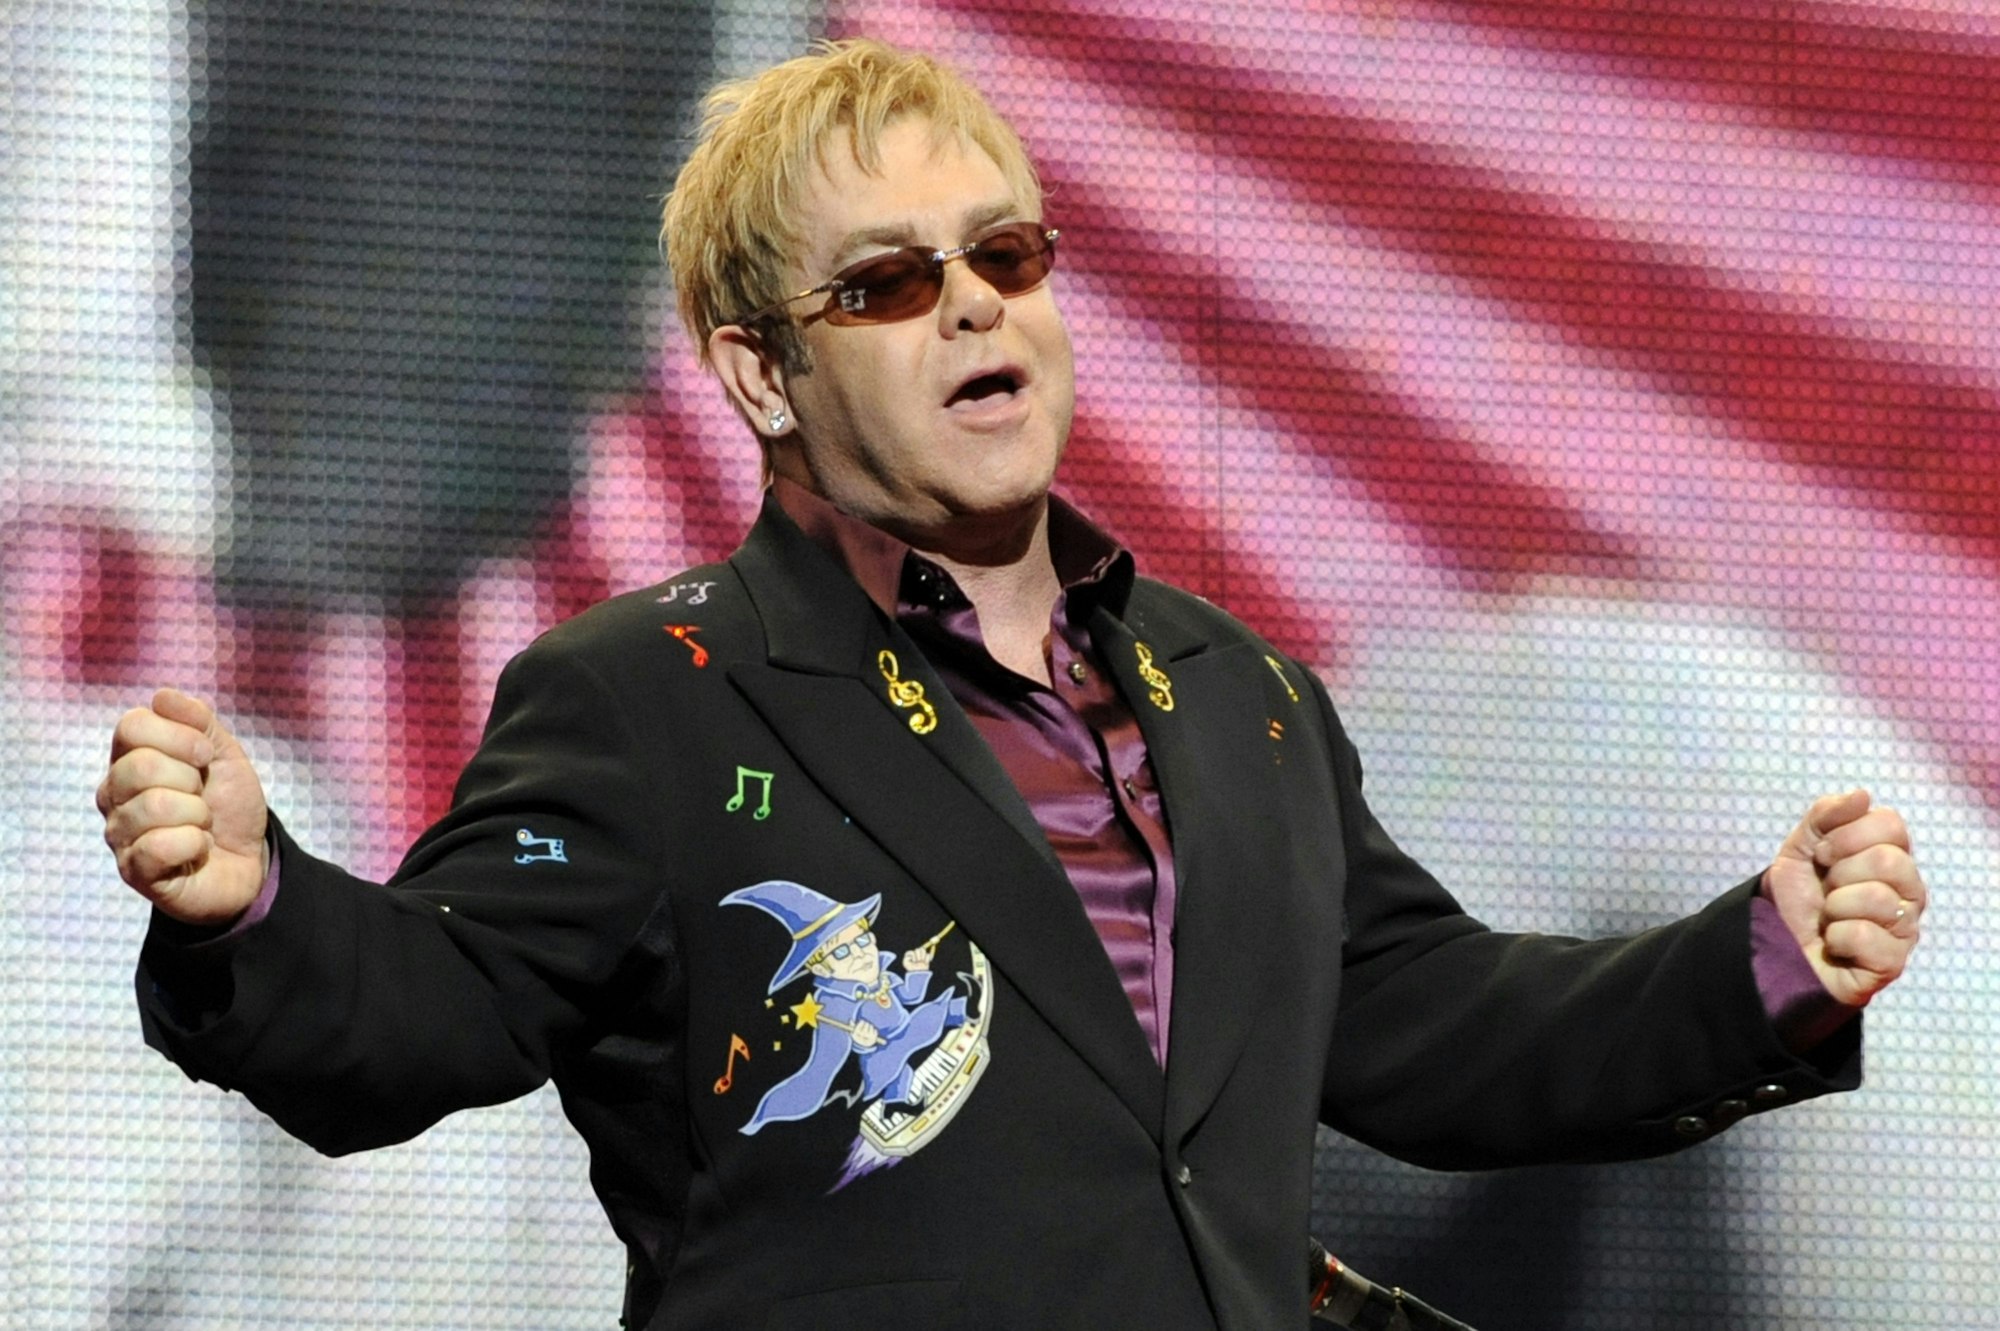 Sänger Elton John hat bei einem Auftritt die Arme ausgebreitet